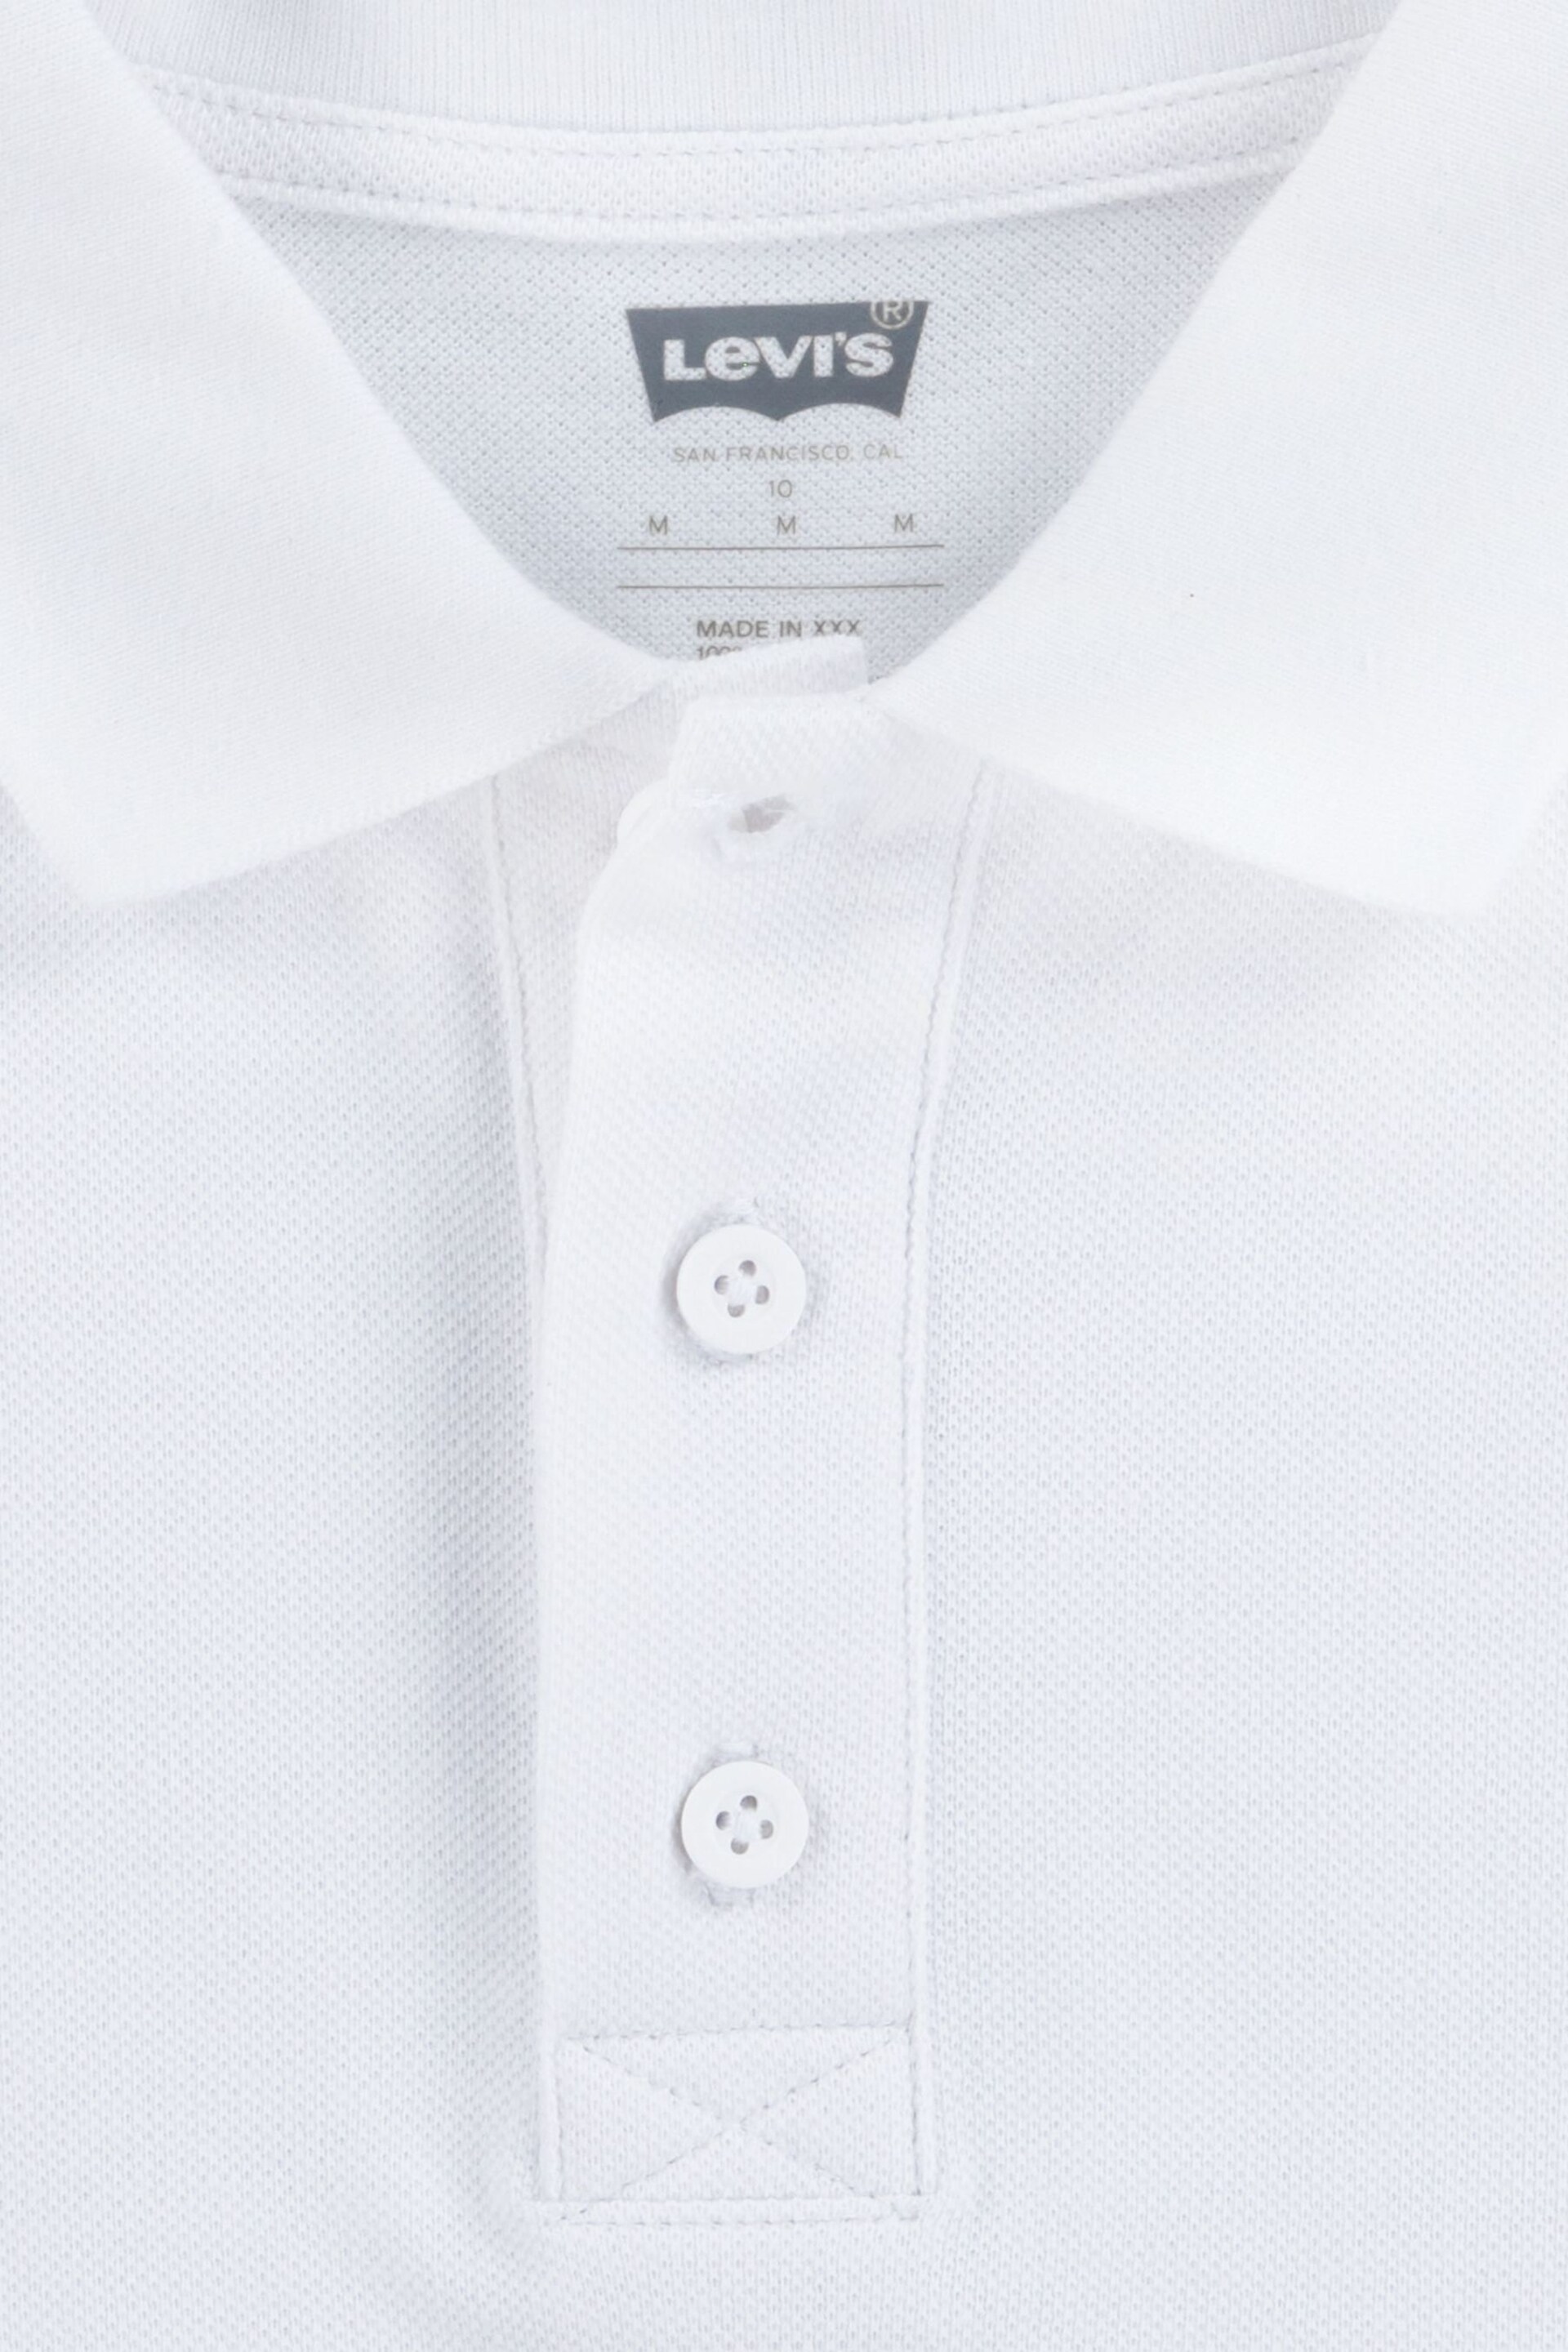 Levi's White Levi's® White Chest Logo White Polo Shirt - Image 3 of 5